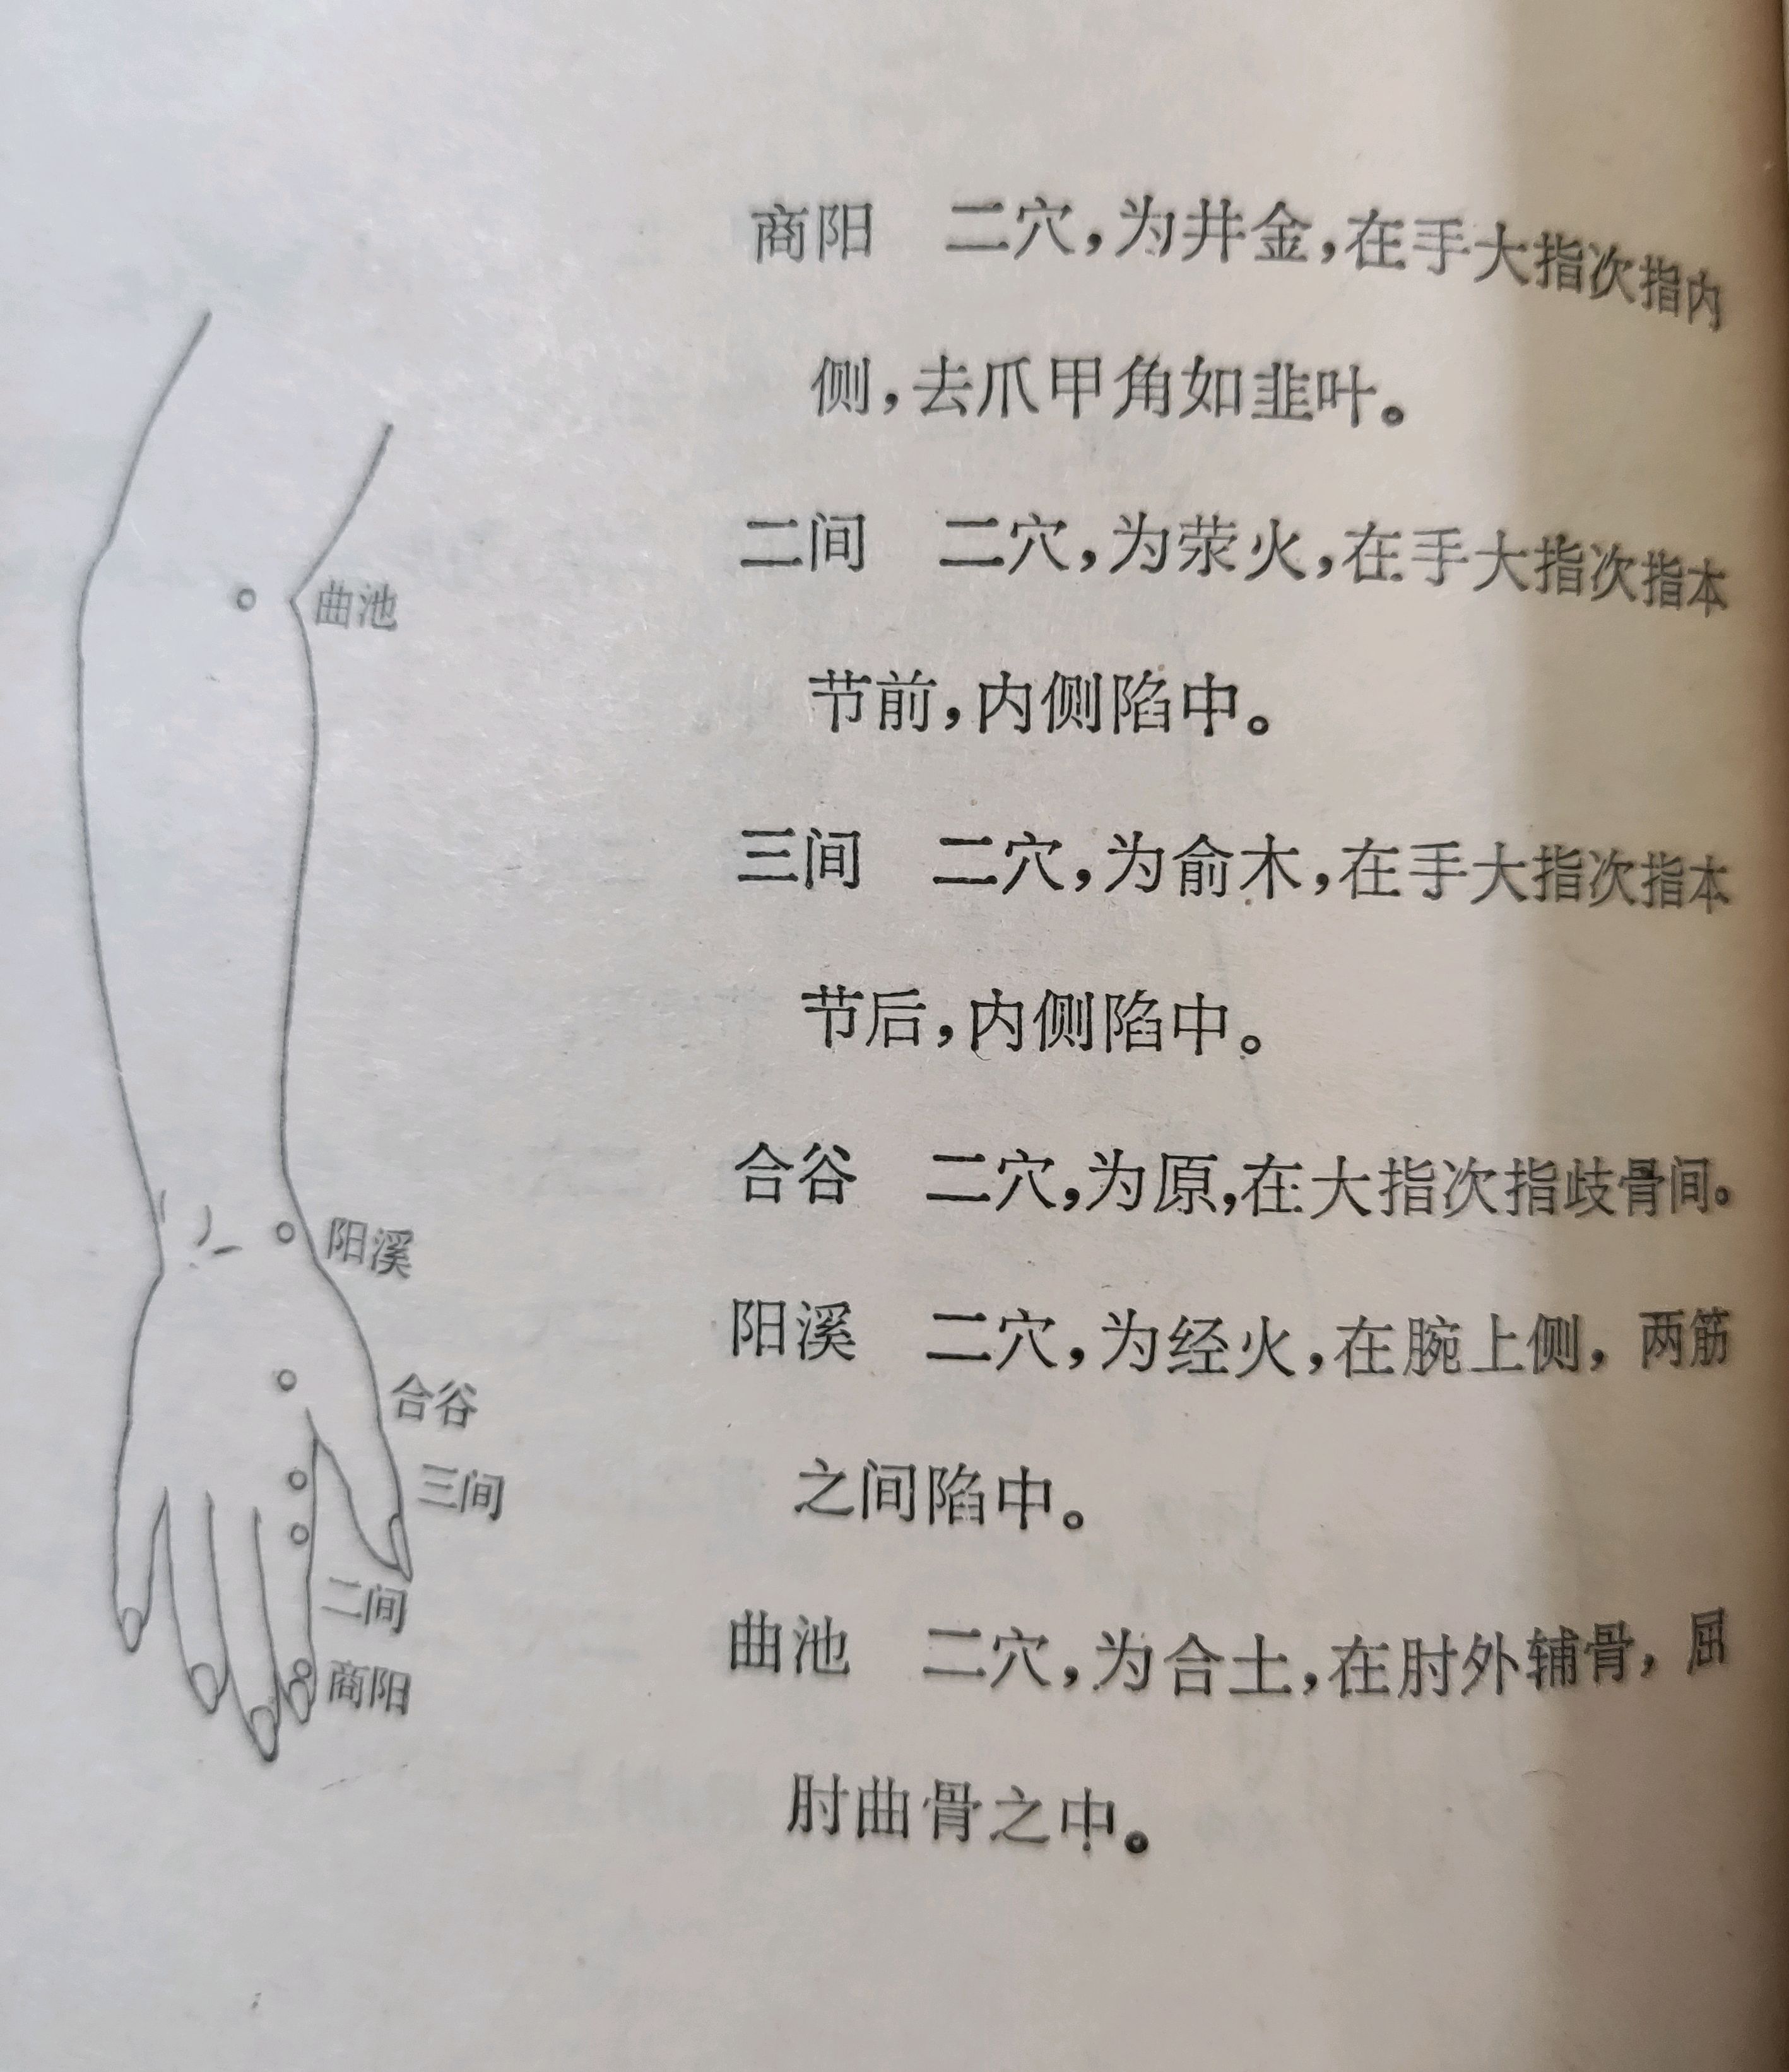 手部大肠经的位置图片图片